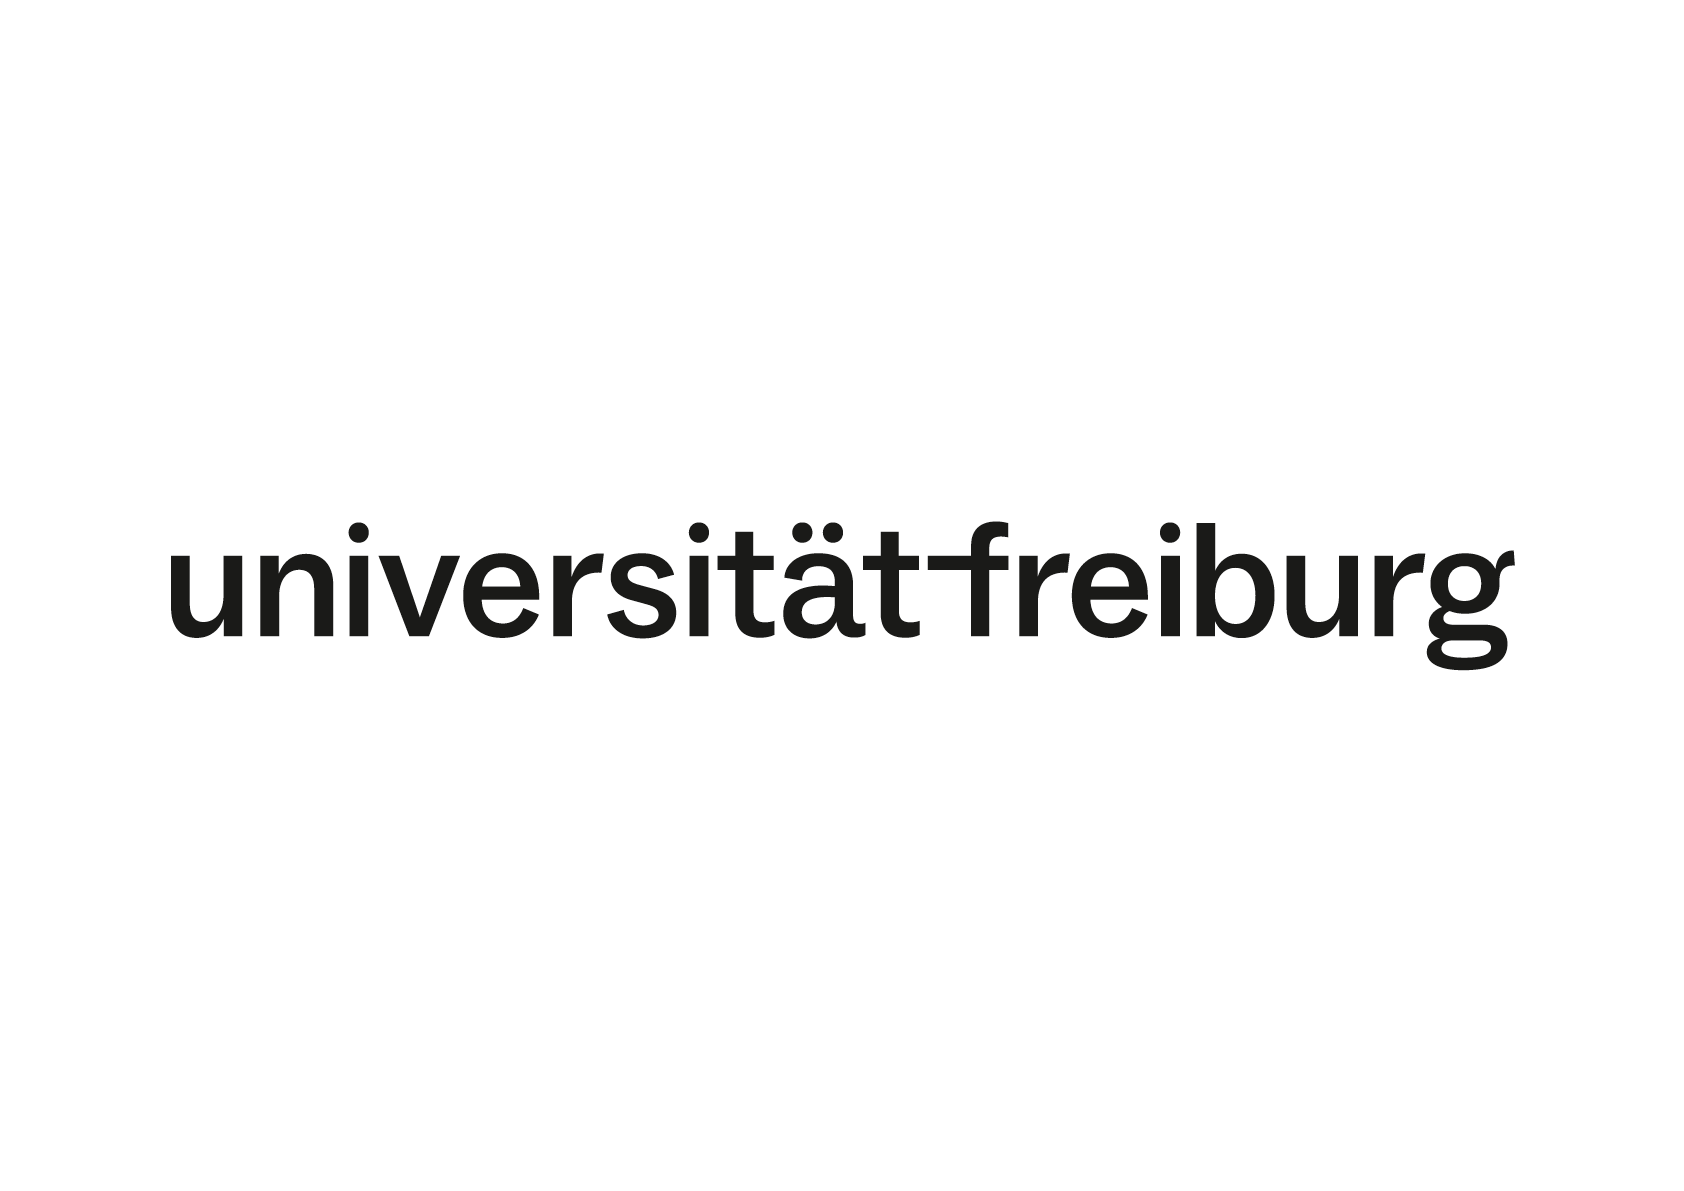 Schwarze Wortmarke der Universität auf weißem Hintergrund